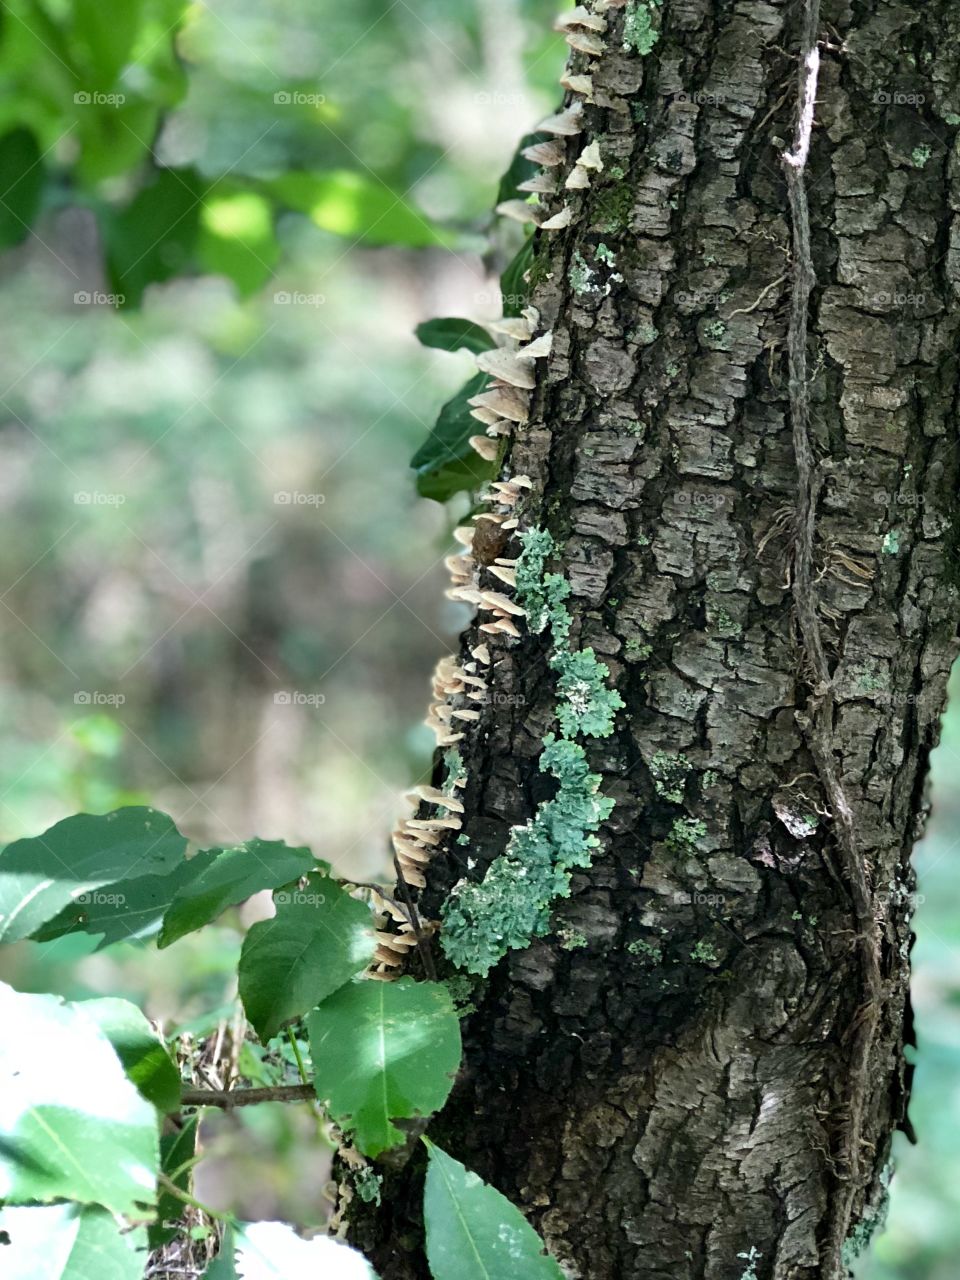 Lichen and fungus